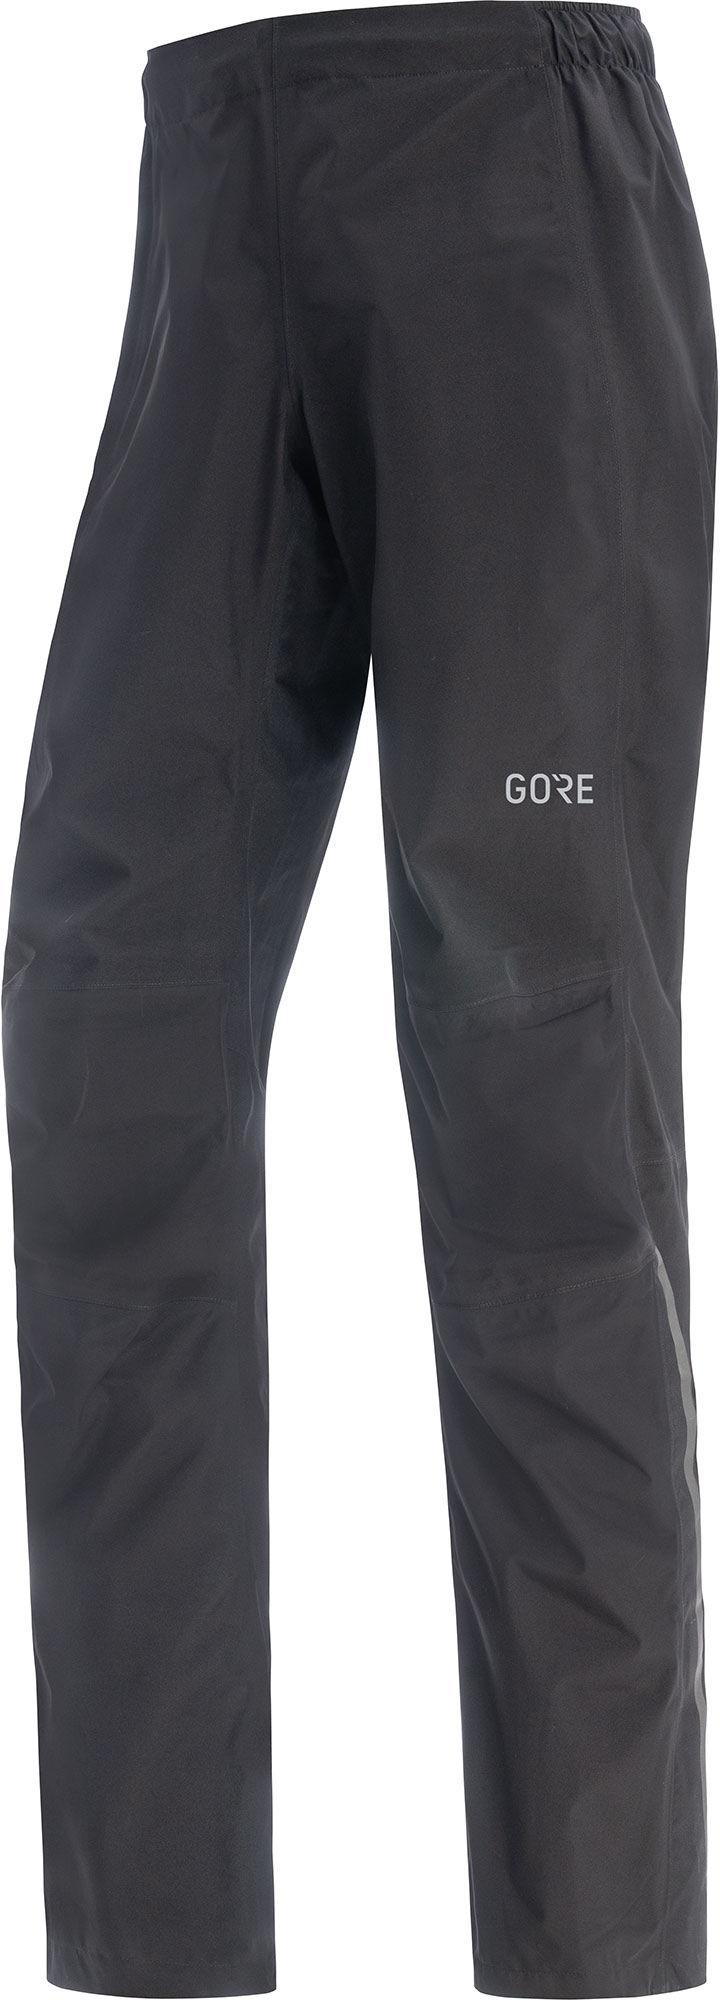 Gorewear Goretex Paclite Pants - Black